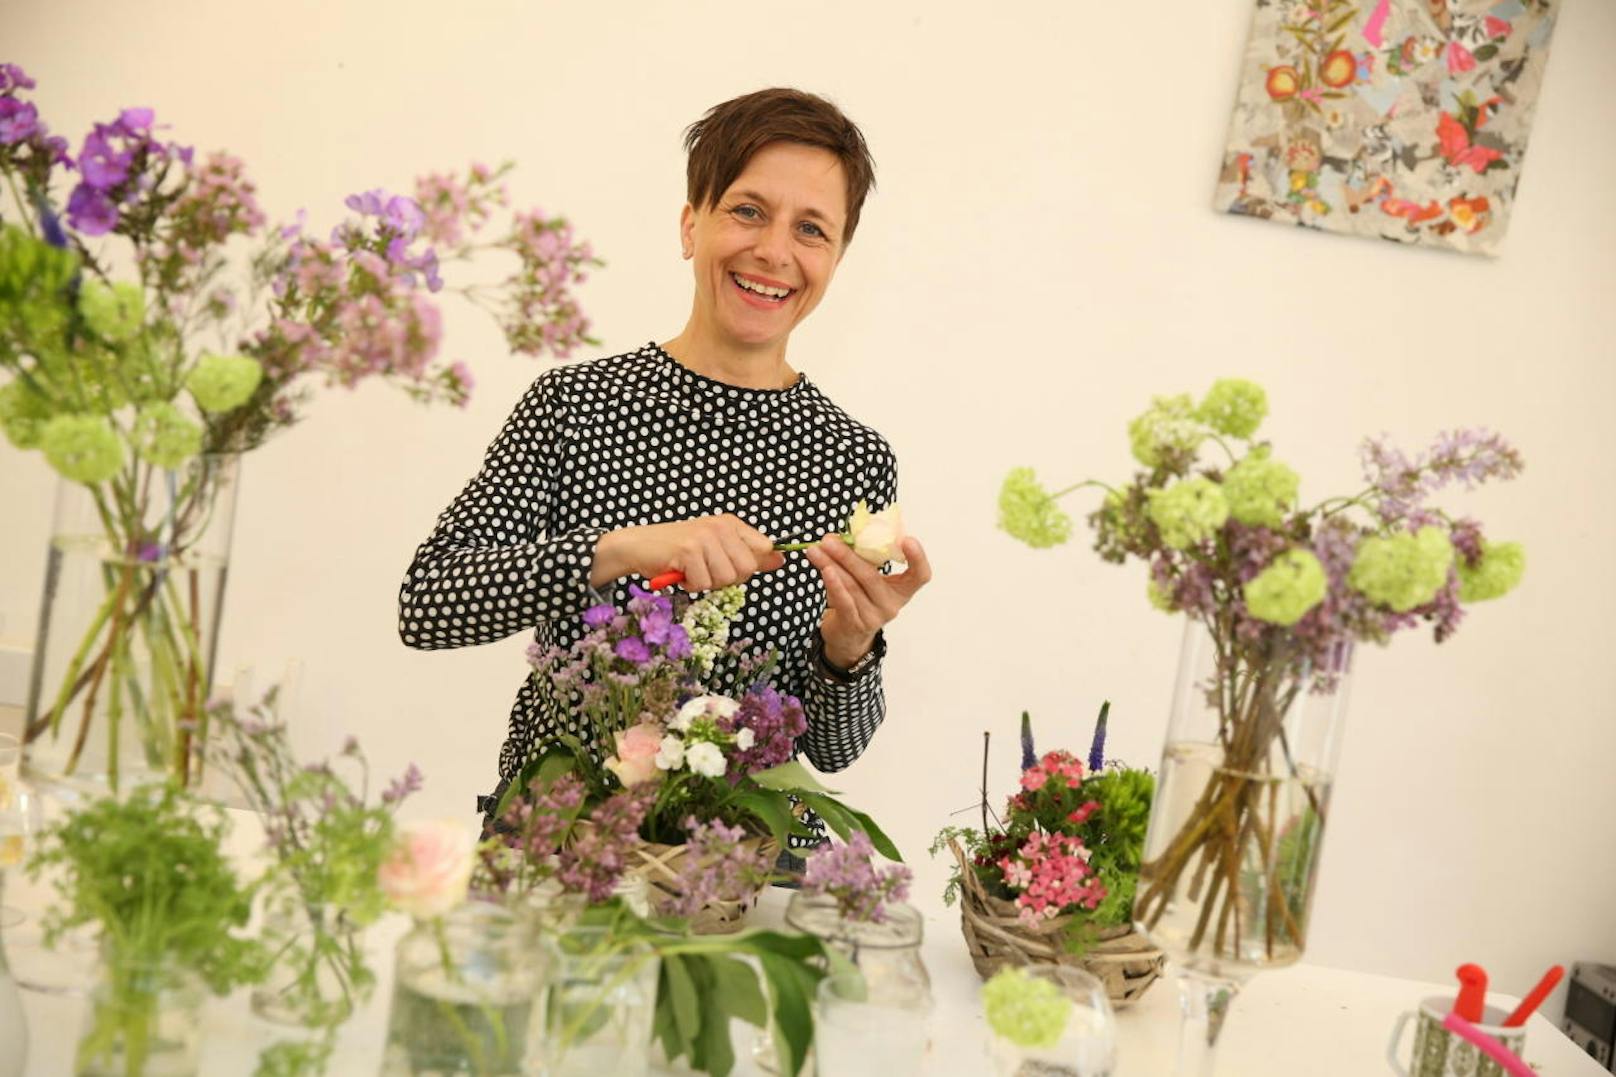 Seit 2013 verbindet Meisterfloristin und Gartentherapeutin Solveig Kelber (48) in ihrem Wiener Atelier "Asthaus" Soziales und Natur. Mit ihren "floralen Interventionen" hilft Sie älteren oder kranken Personen wieder zu etwas mehr Lebensfreude.